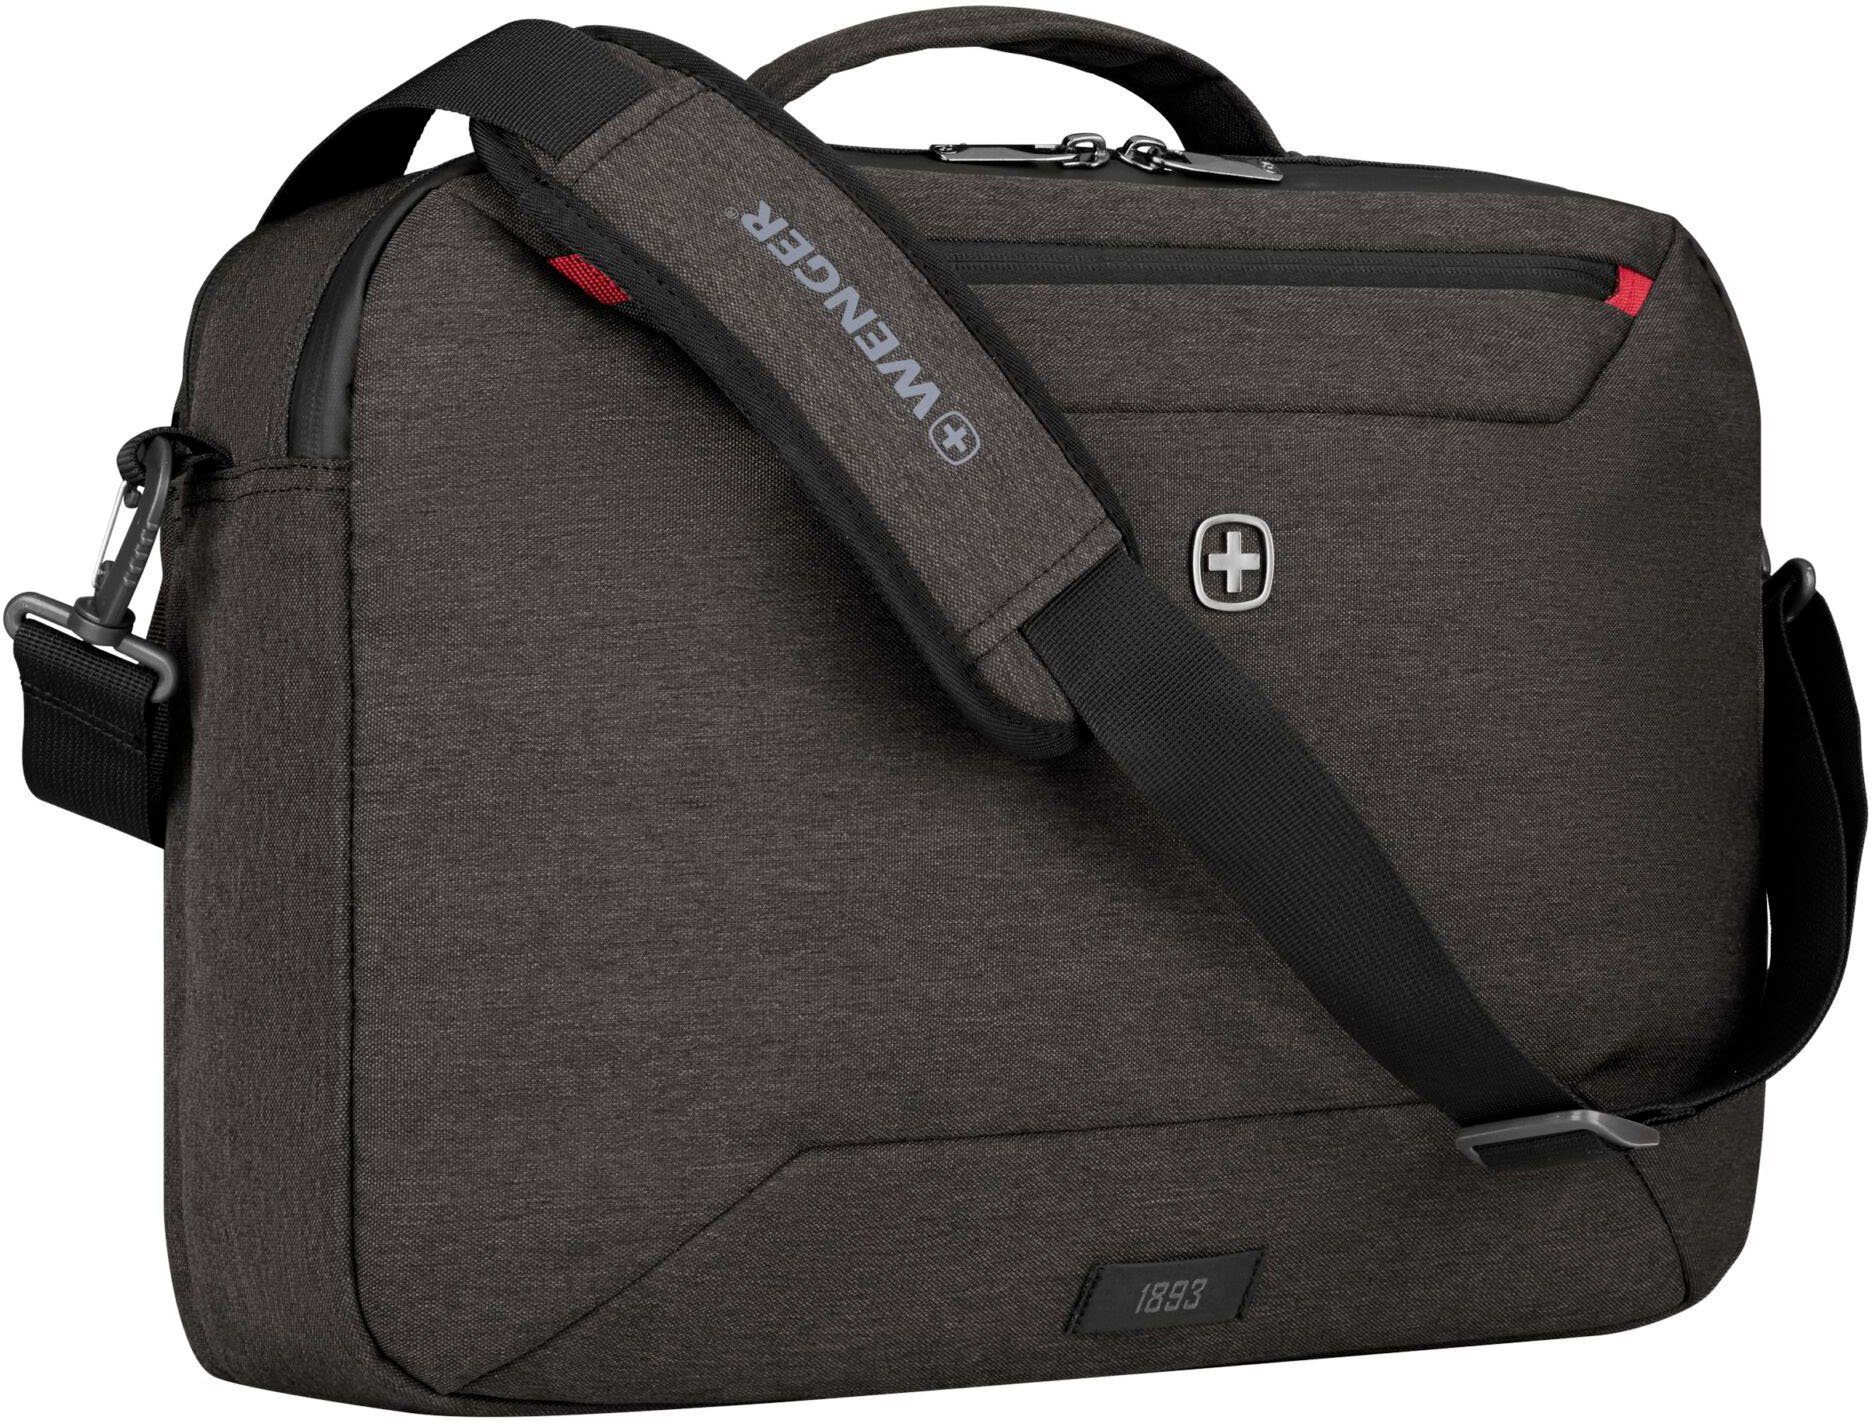 Wenger Laptoptasche Commute, auch grau, Rucksack mit als 16-Zoll tragbar Laptopfach